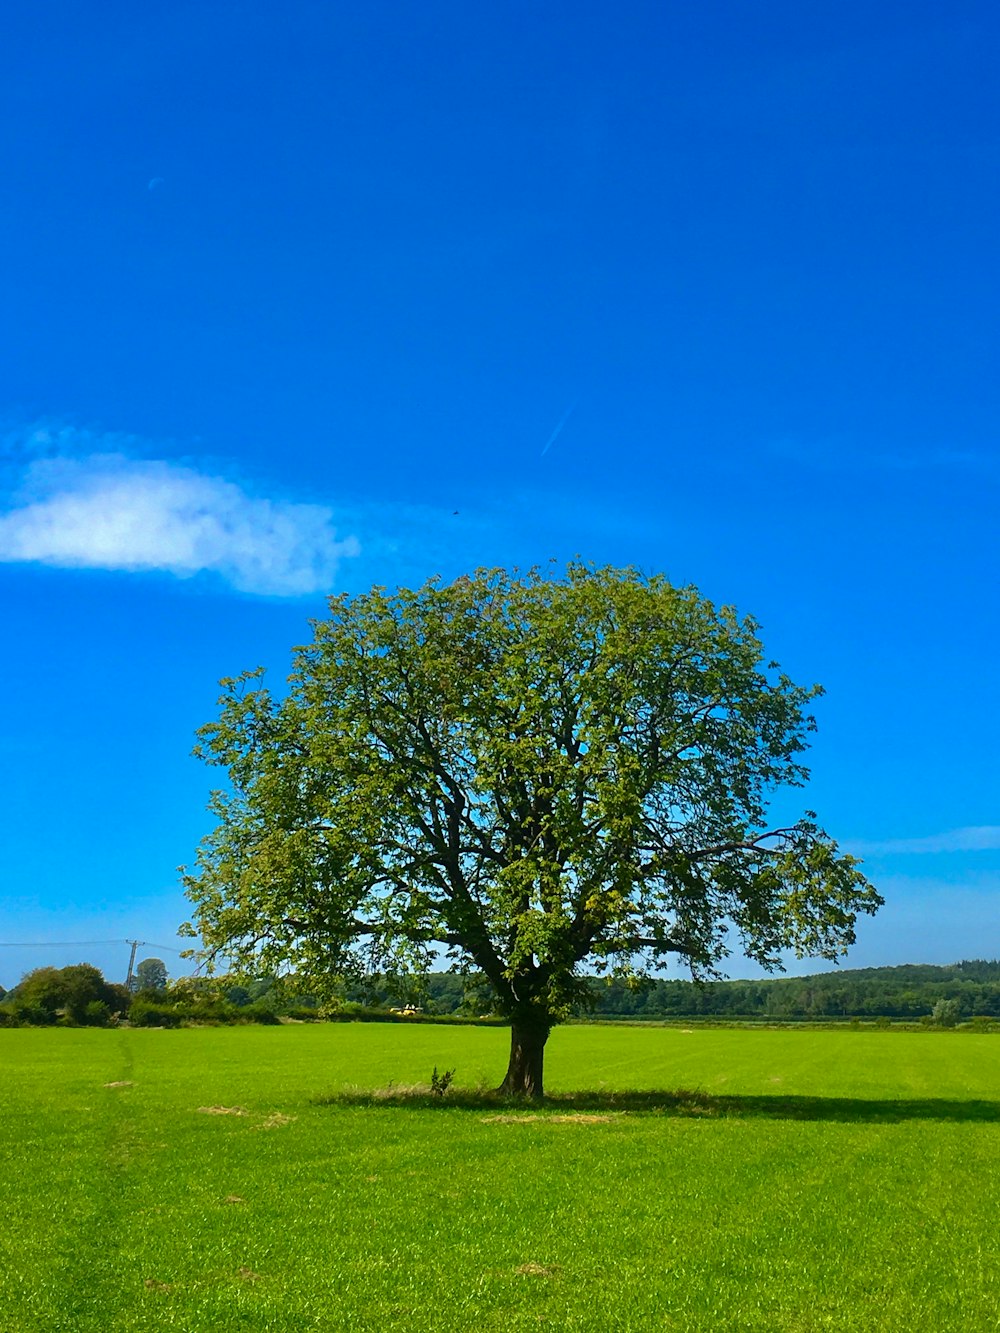 낮 동안 푸른 하늘 아래 푸른 잔디밭에 푸른 나무